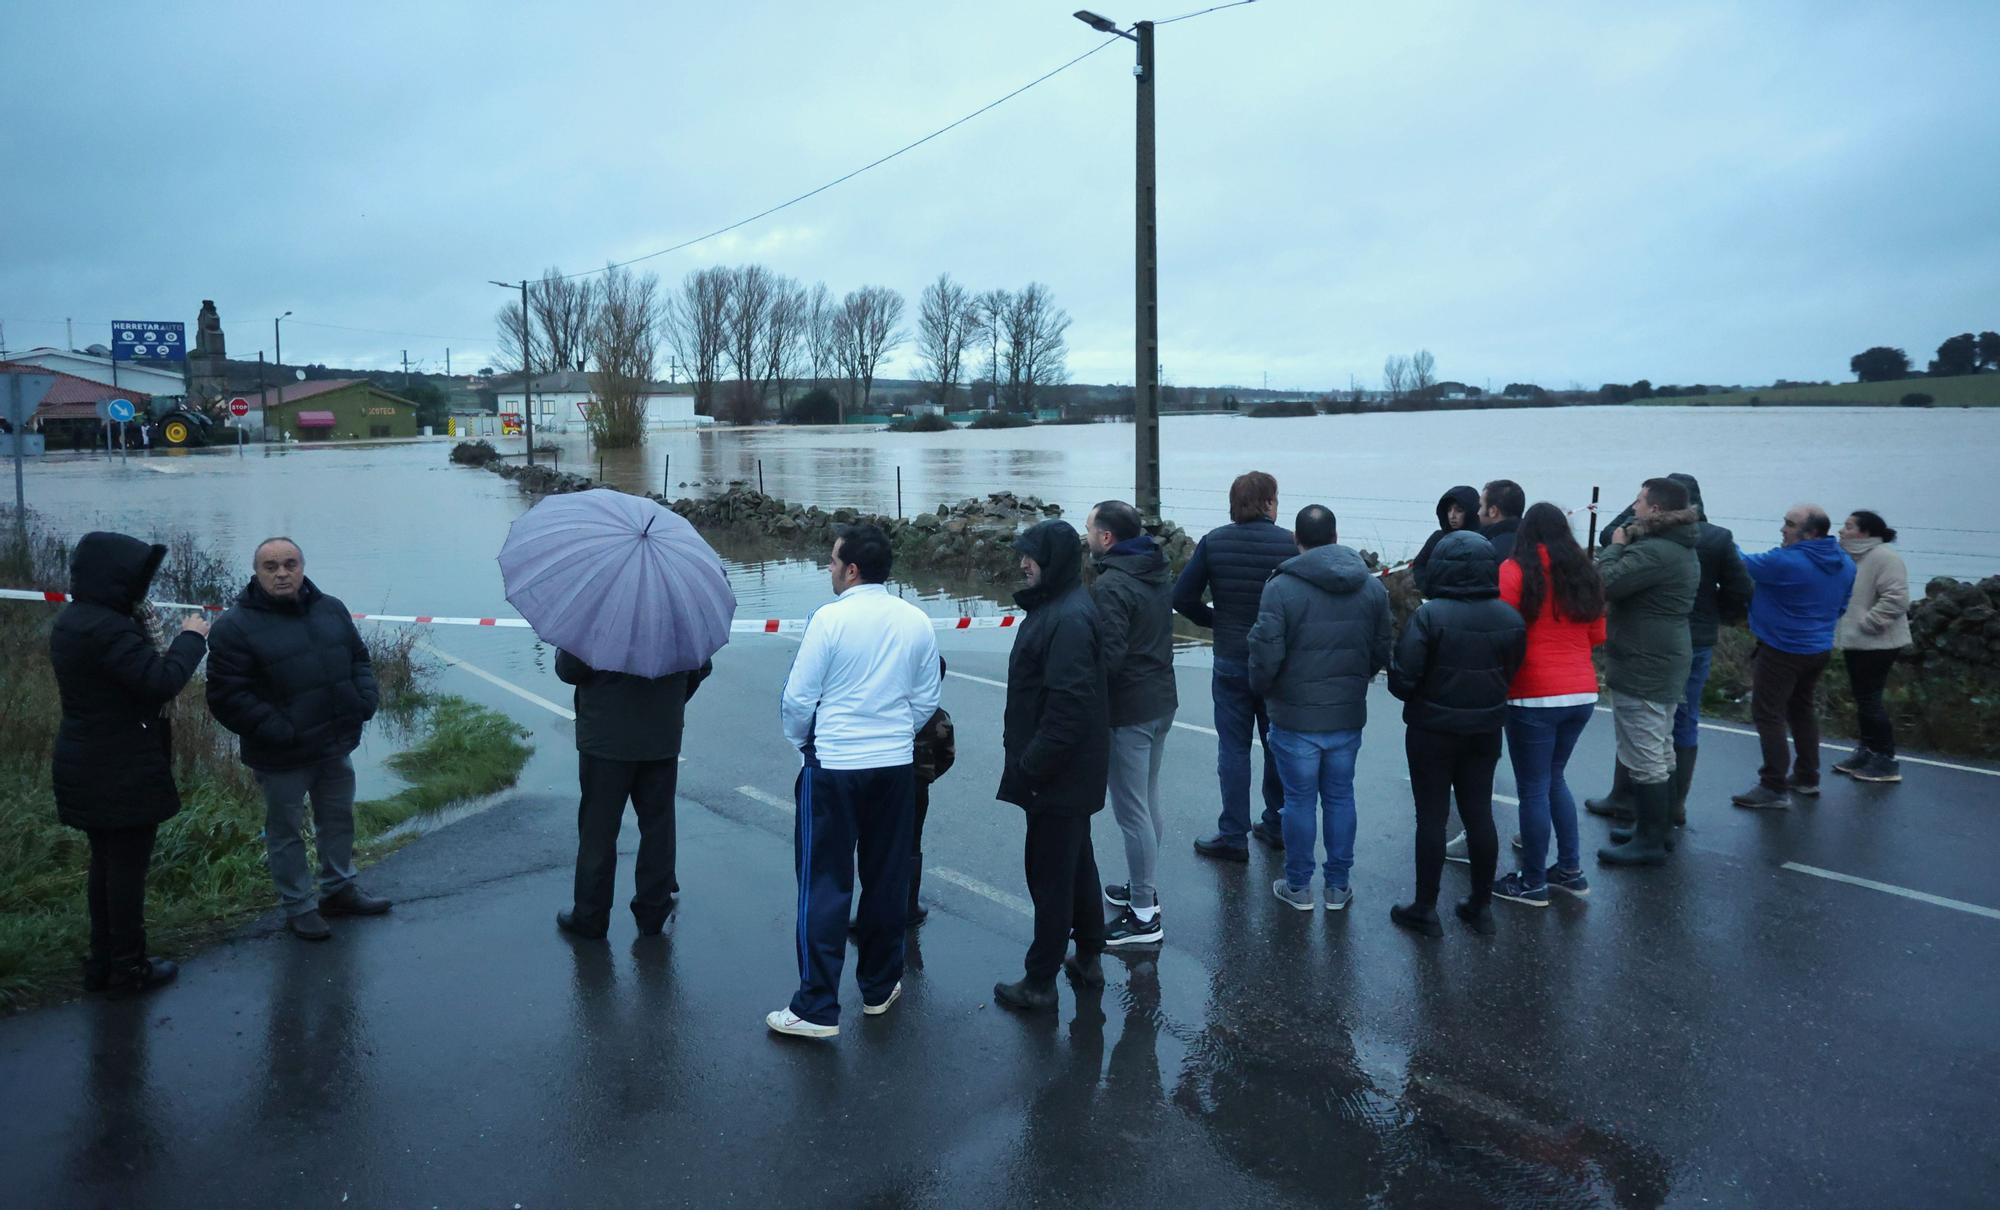 Las intensas lluvias ponen en jaque a Salamanca: varios rescates por inundaciones